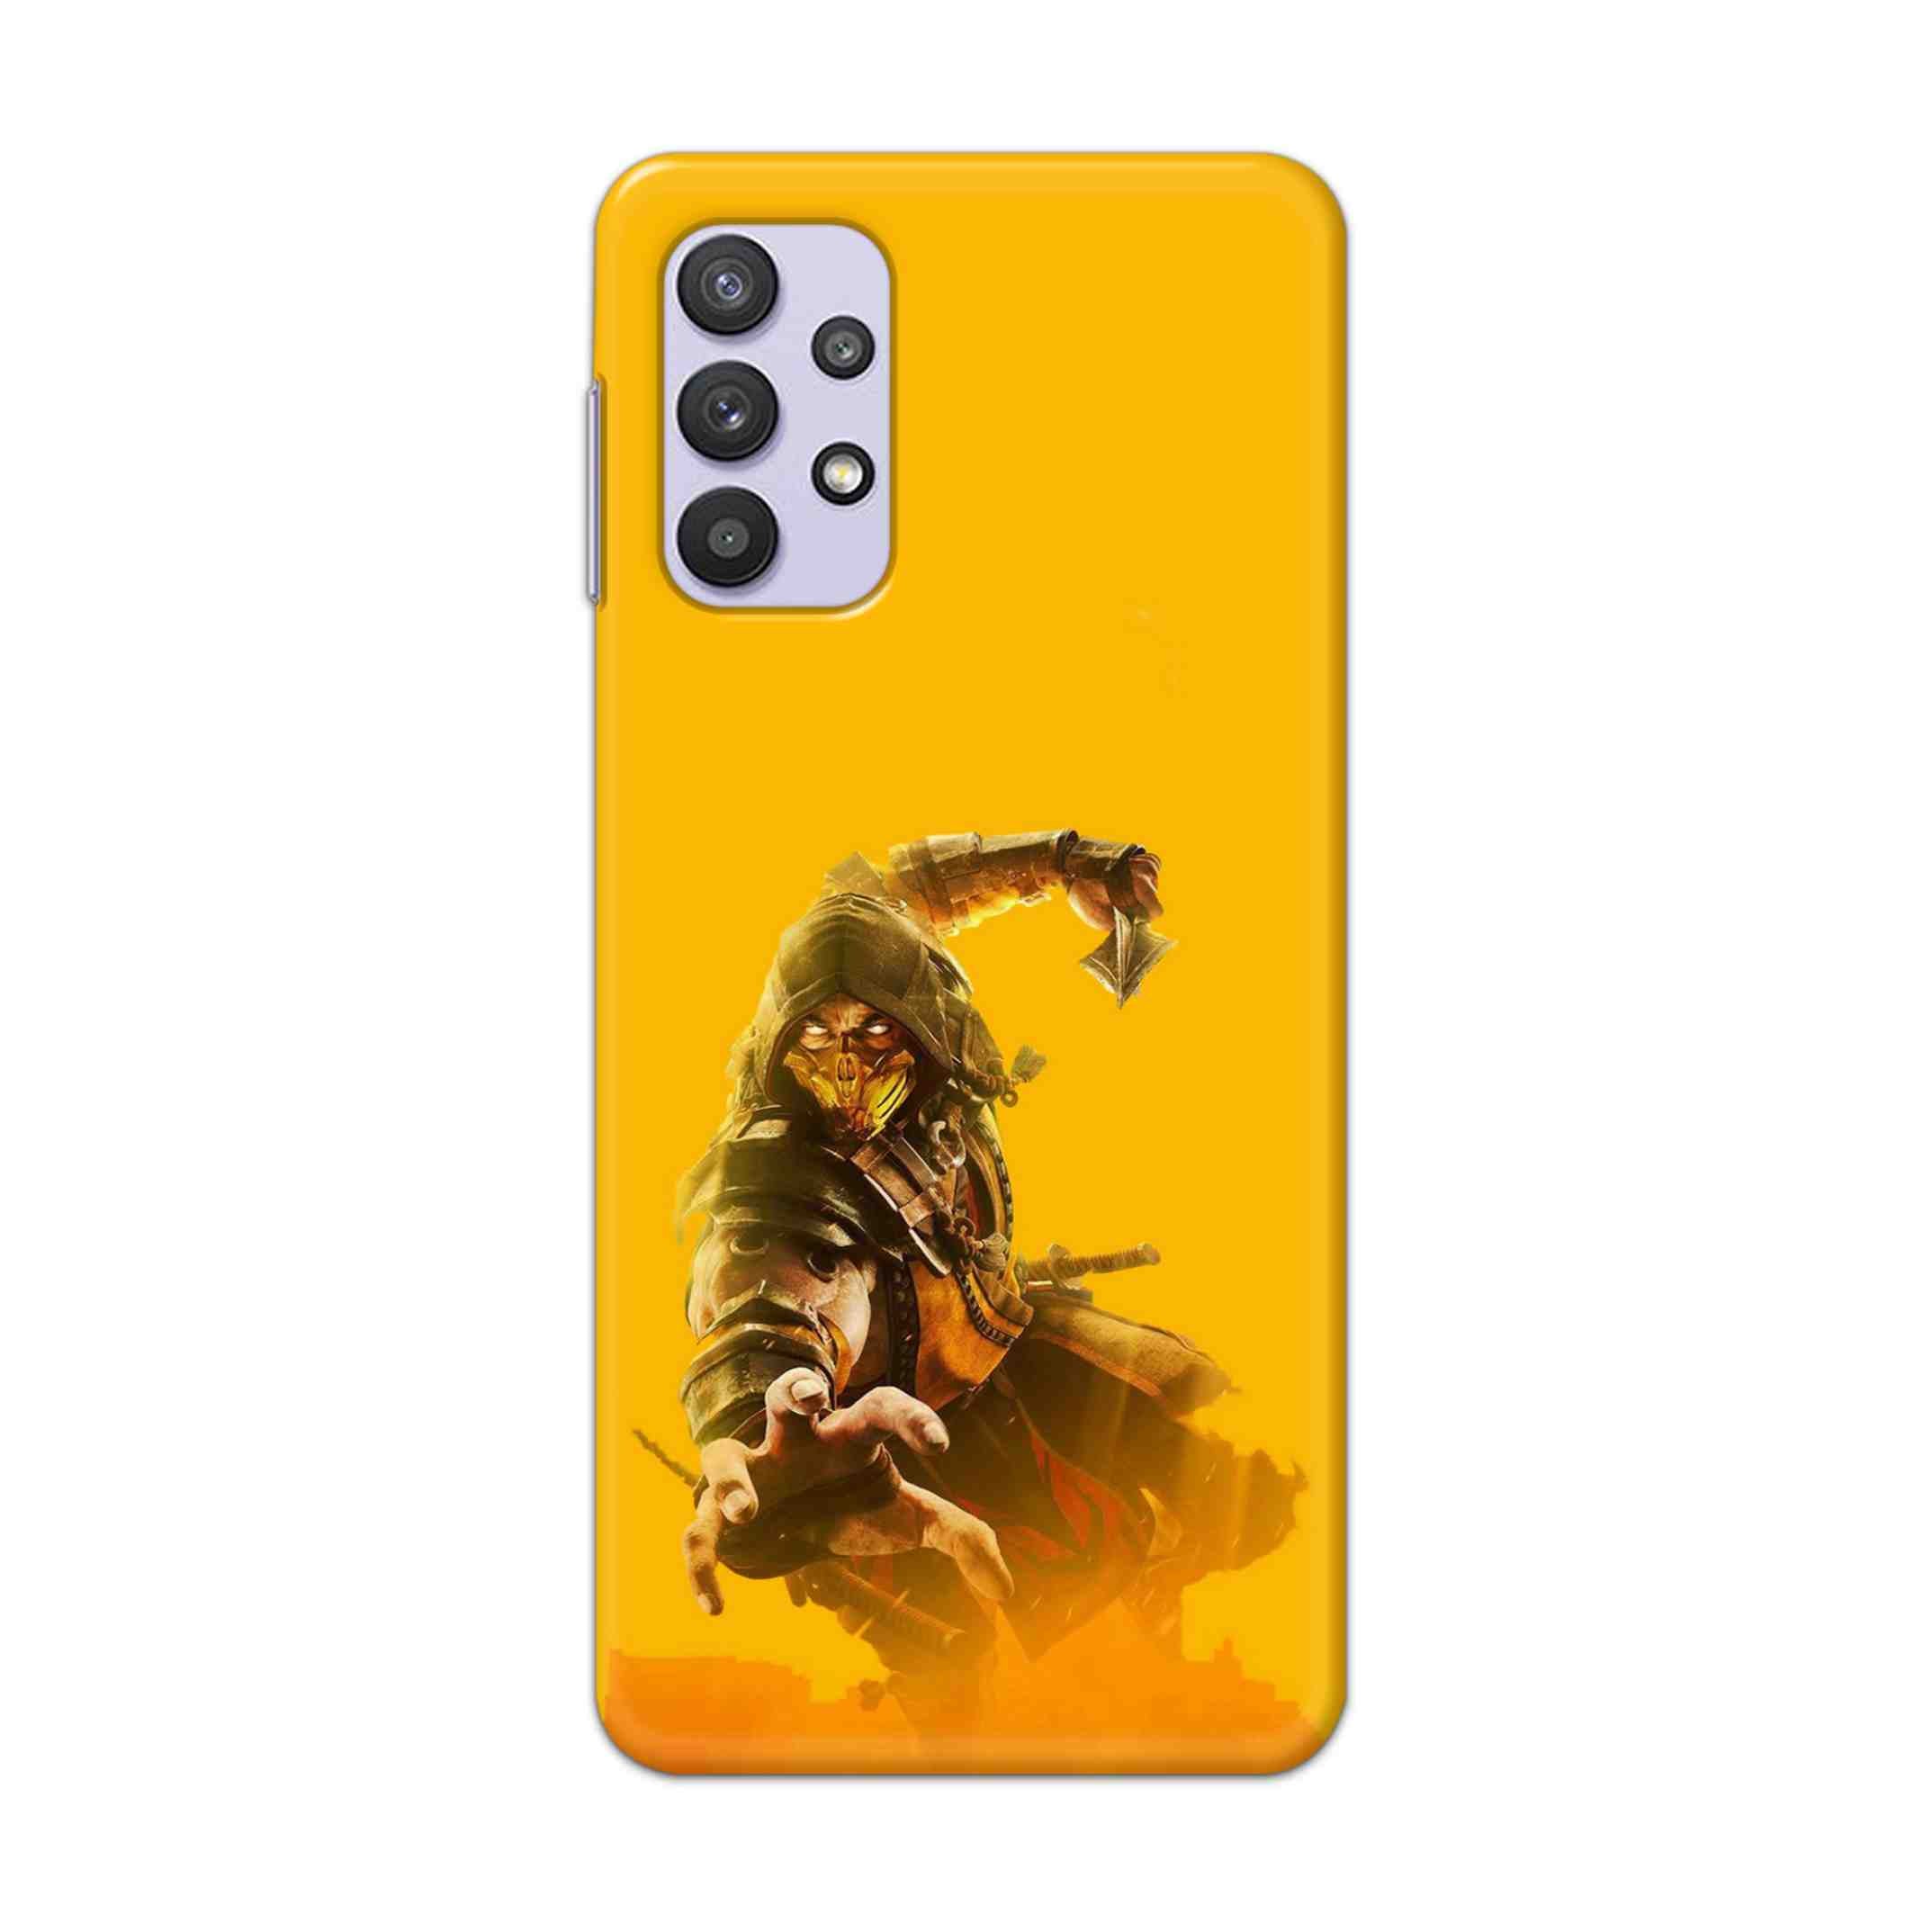 Buy Mortal Kombat Hard Back Mobile Phone Case Cover For Samsung A32 4G Online